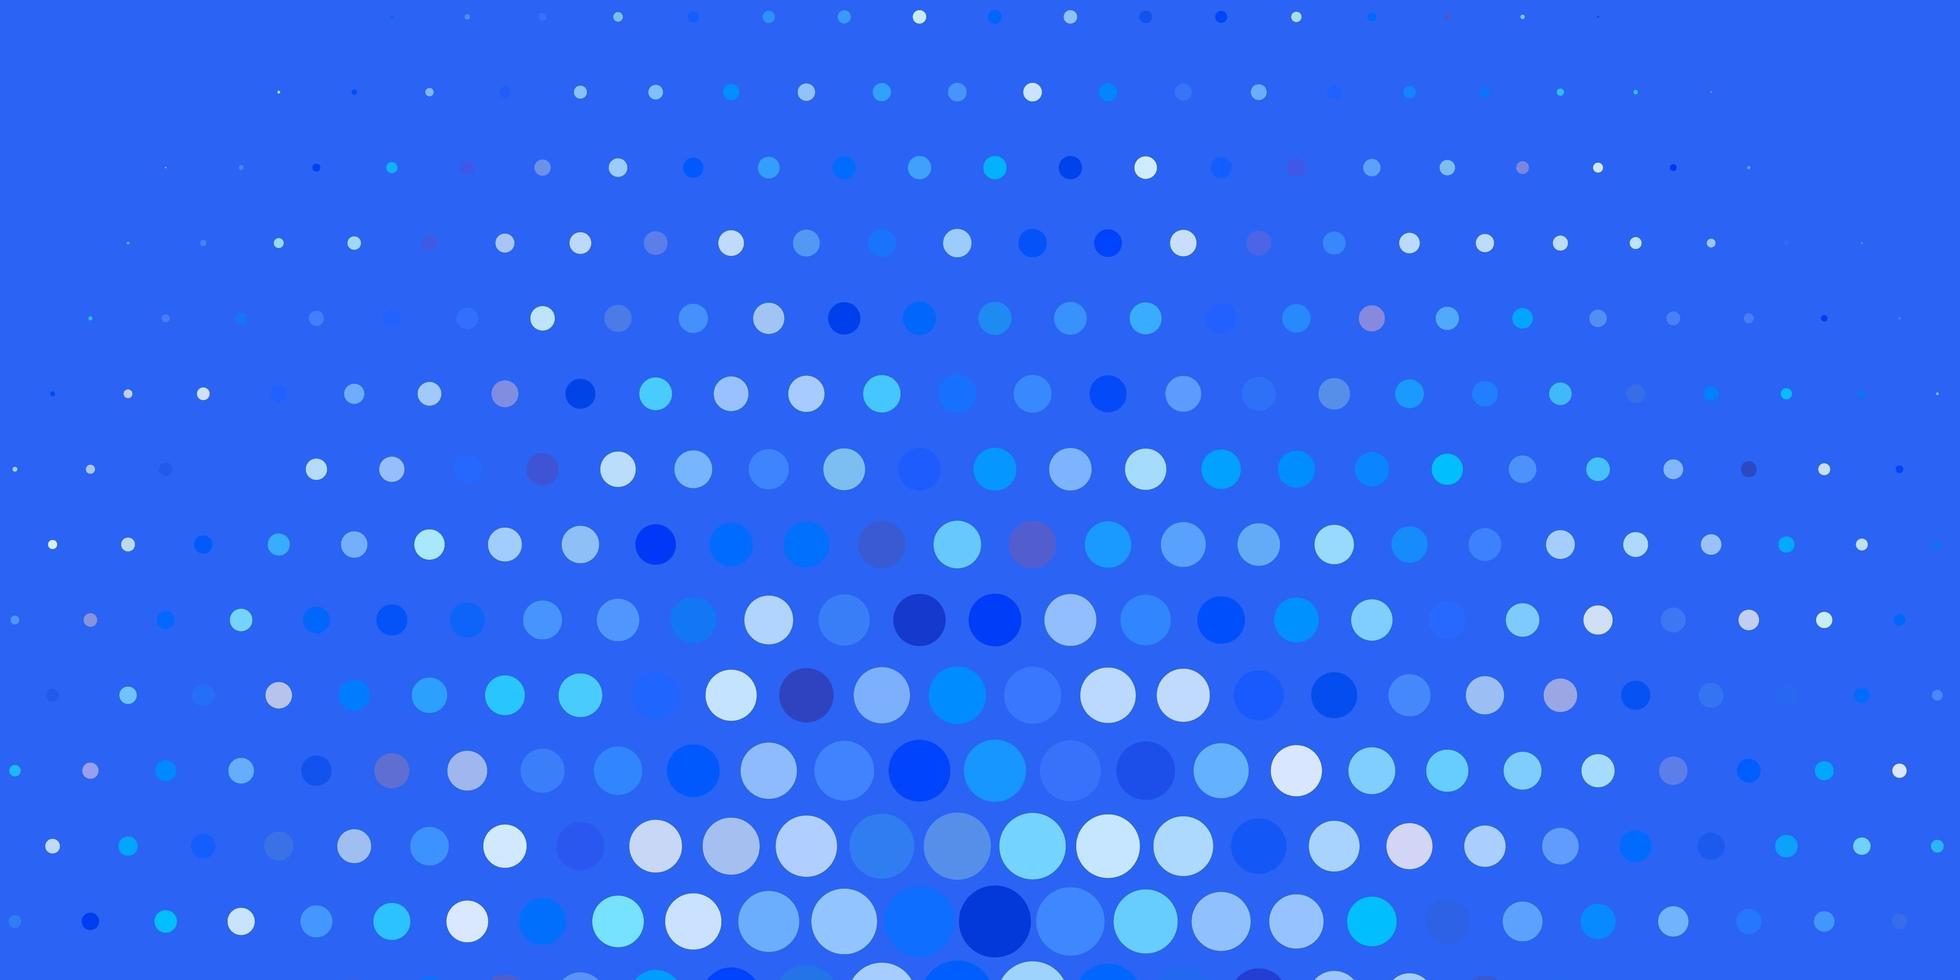 modèle vectoriel bleu foncé avec des sphères. illustration avec un ensemble de sphères abstraites colorées brillantes. conception d'affiches, bannières.